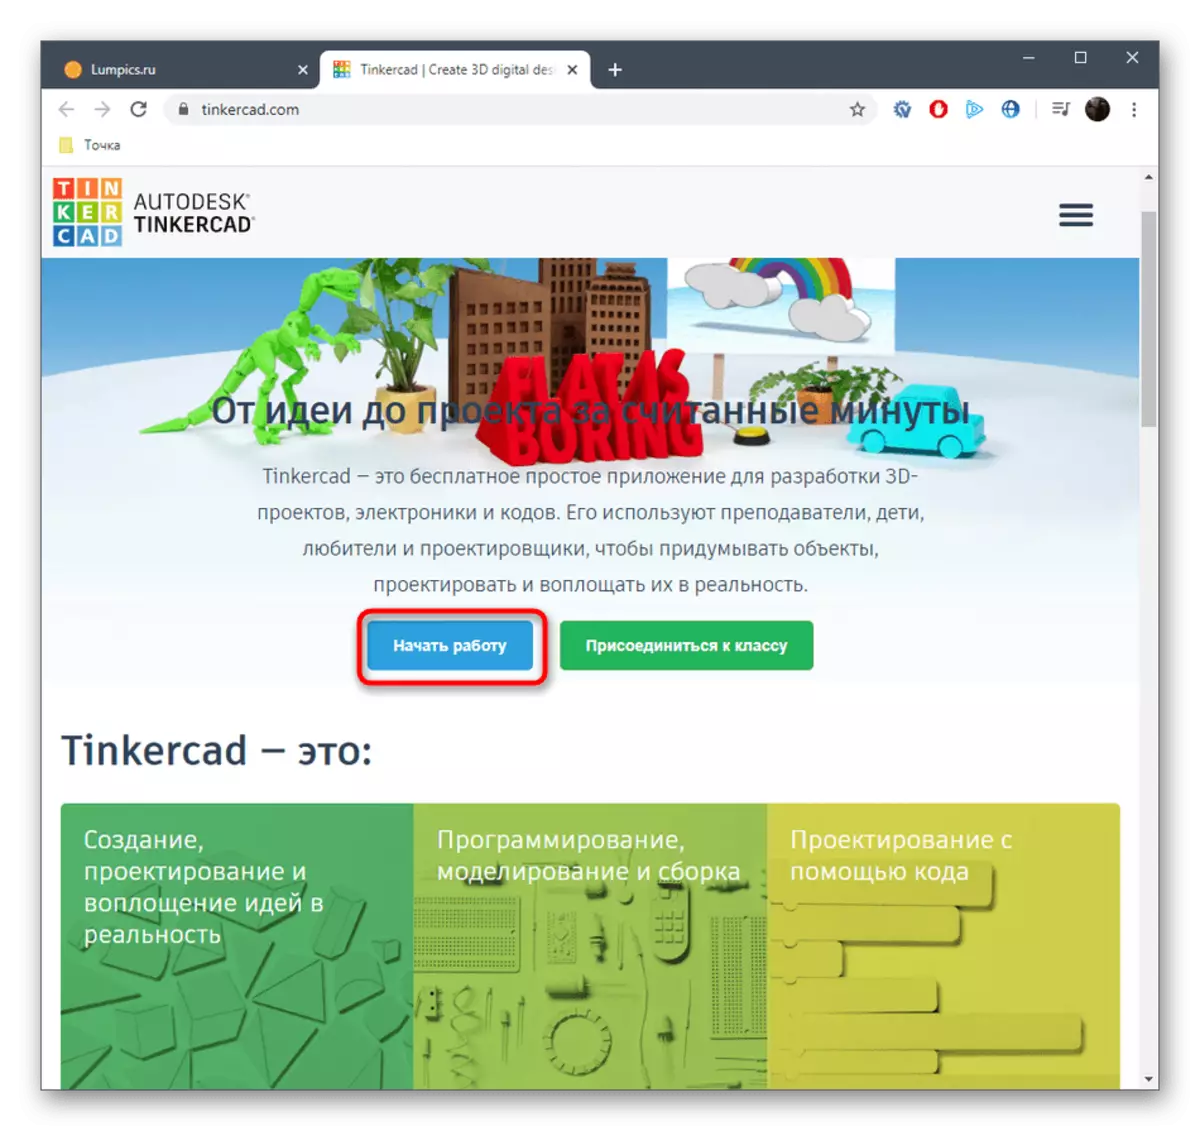 在Tinkercad網站上註冊以創建一個三維模型